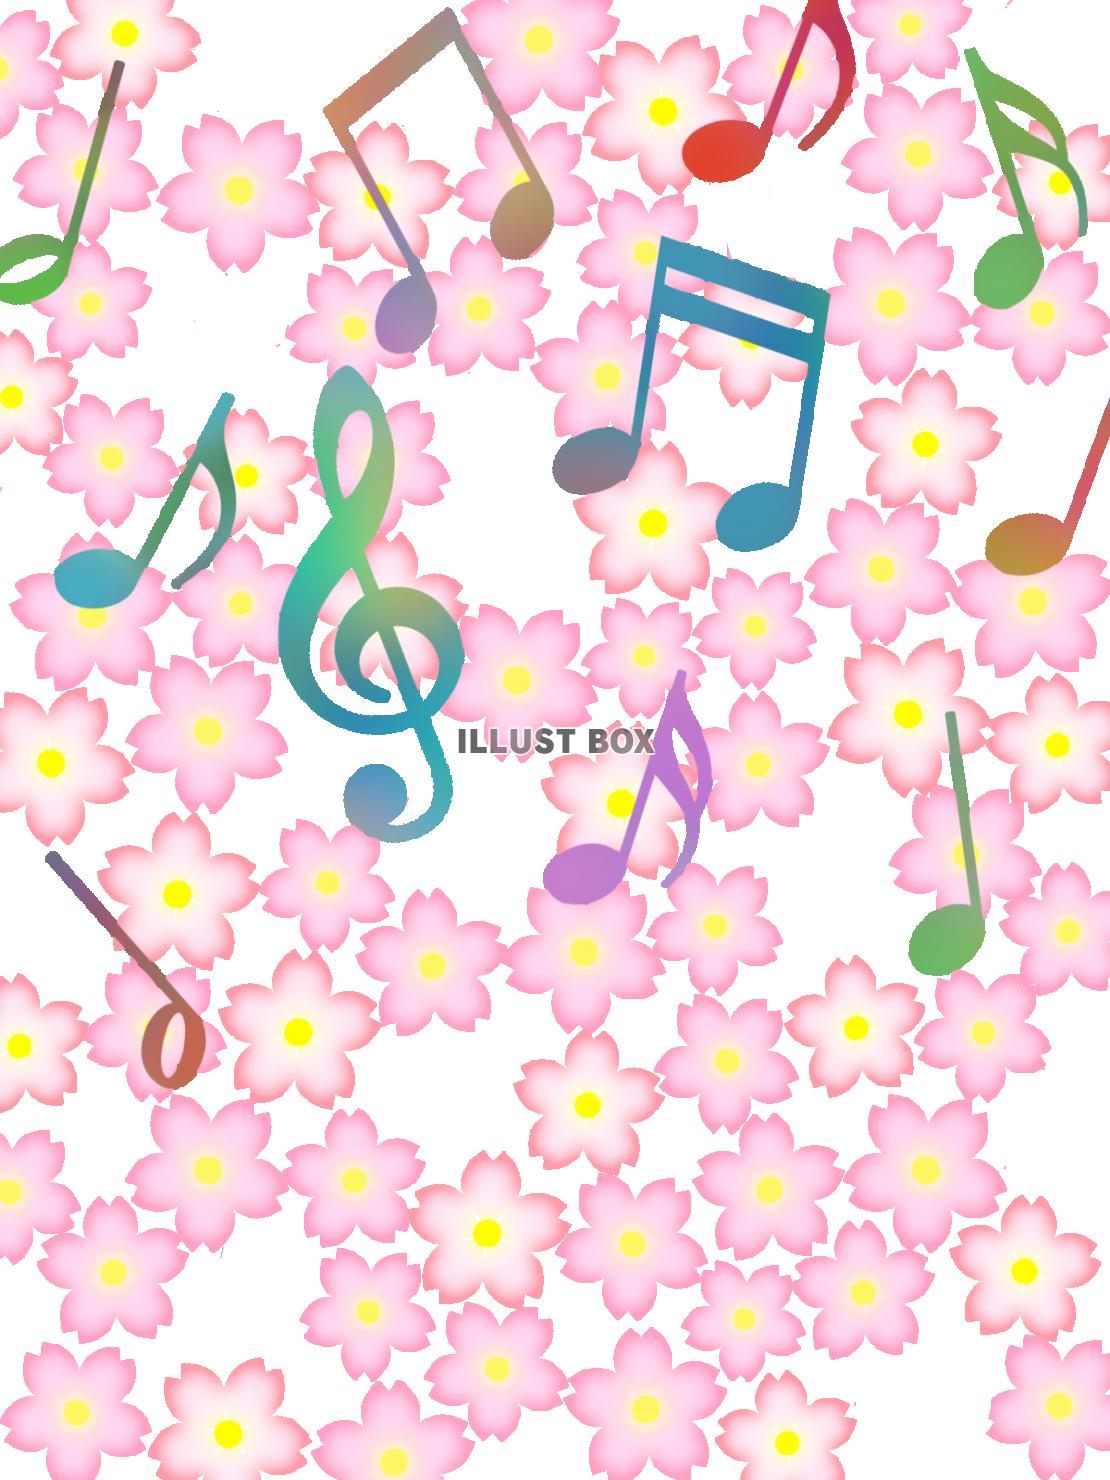 無料イラスト 音符と桜の花模様の壁紙シンプル背景素材イラスト透過png